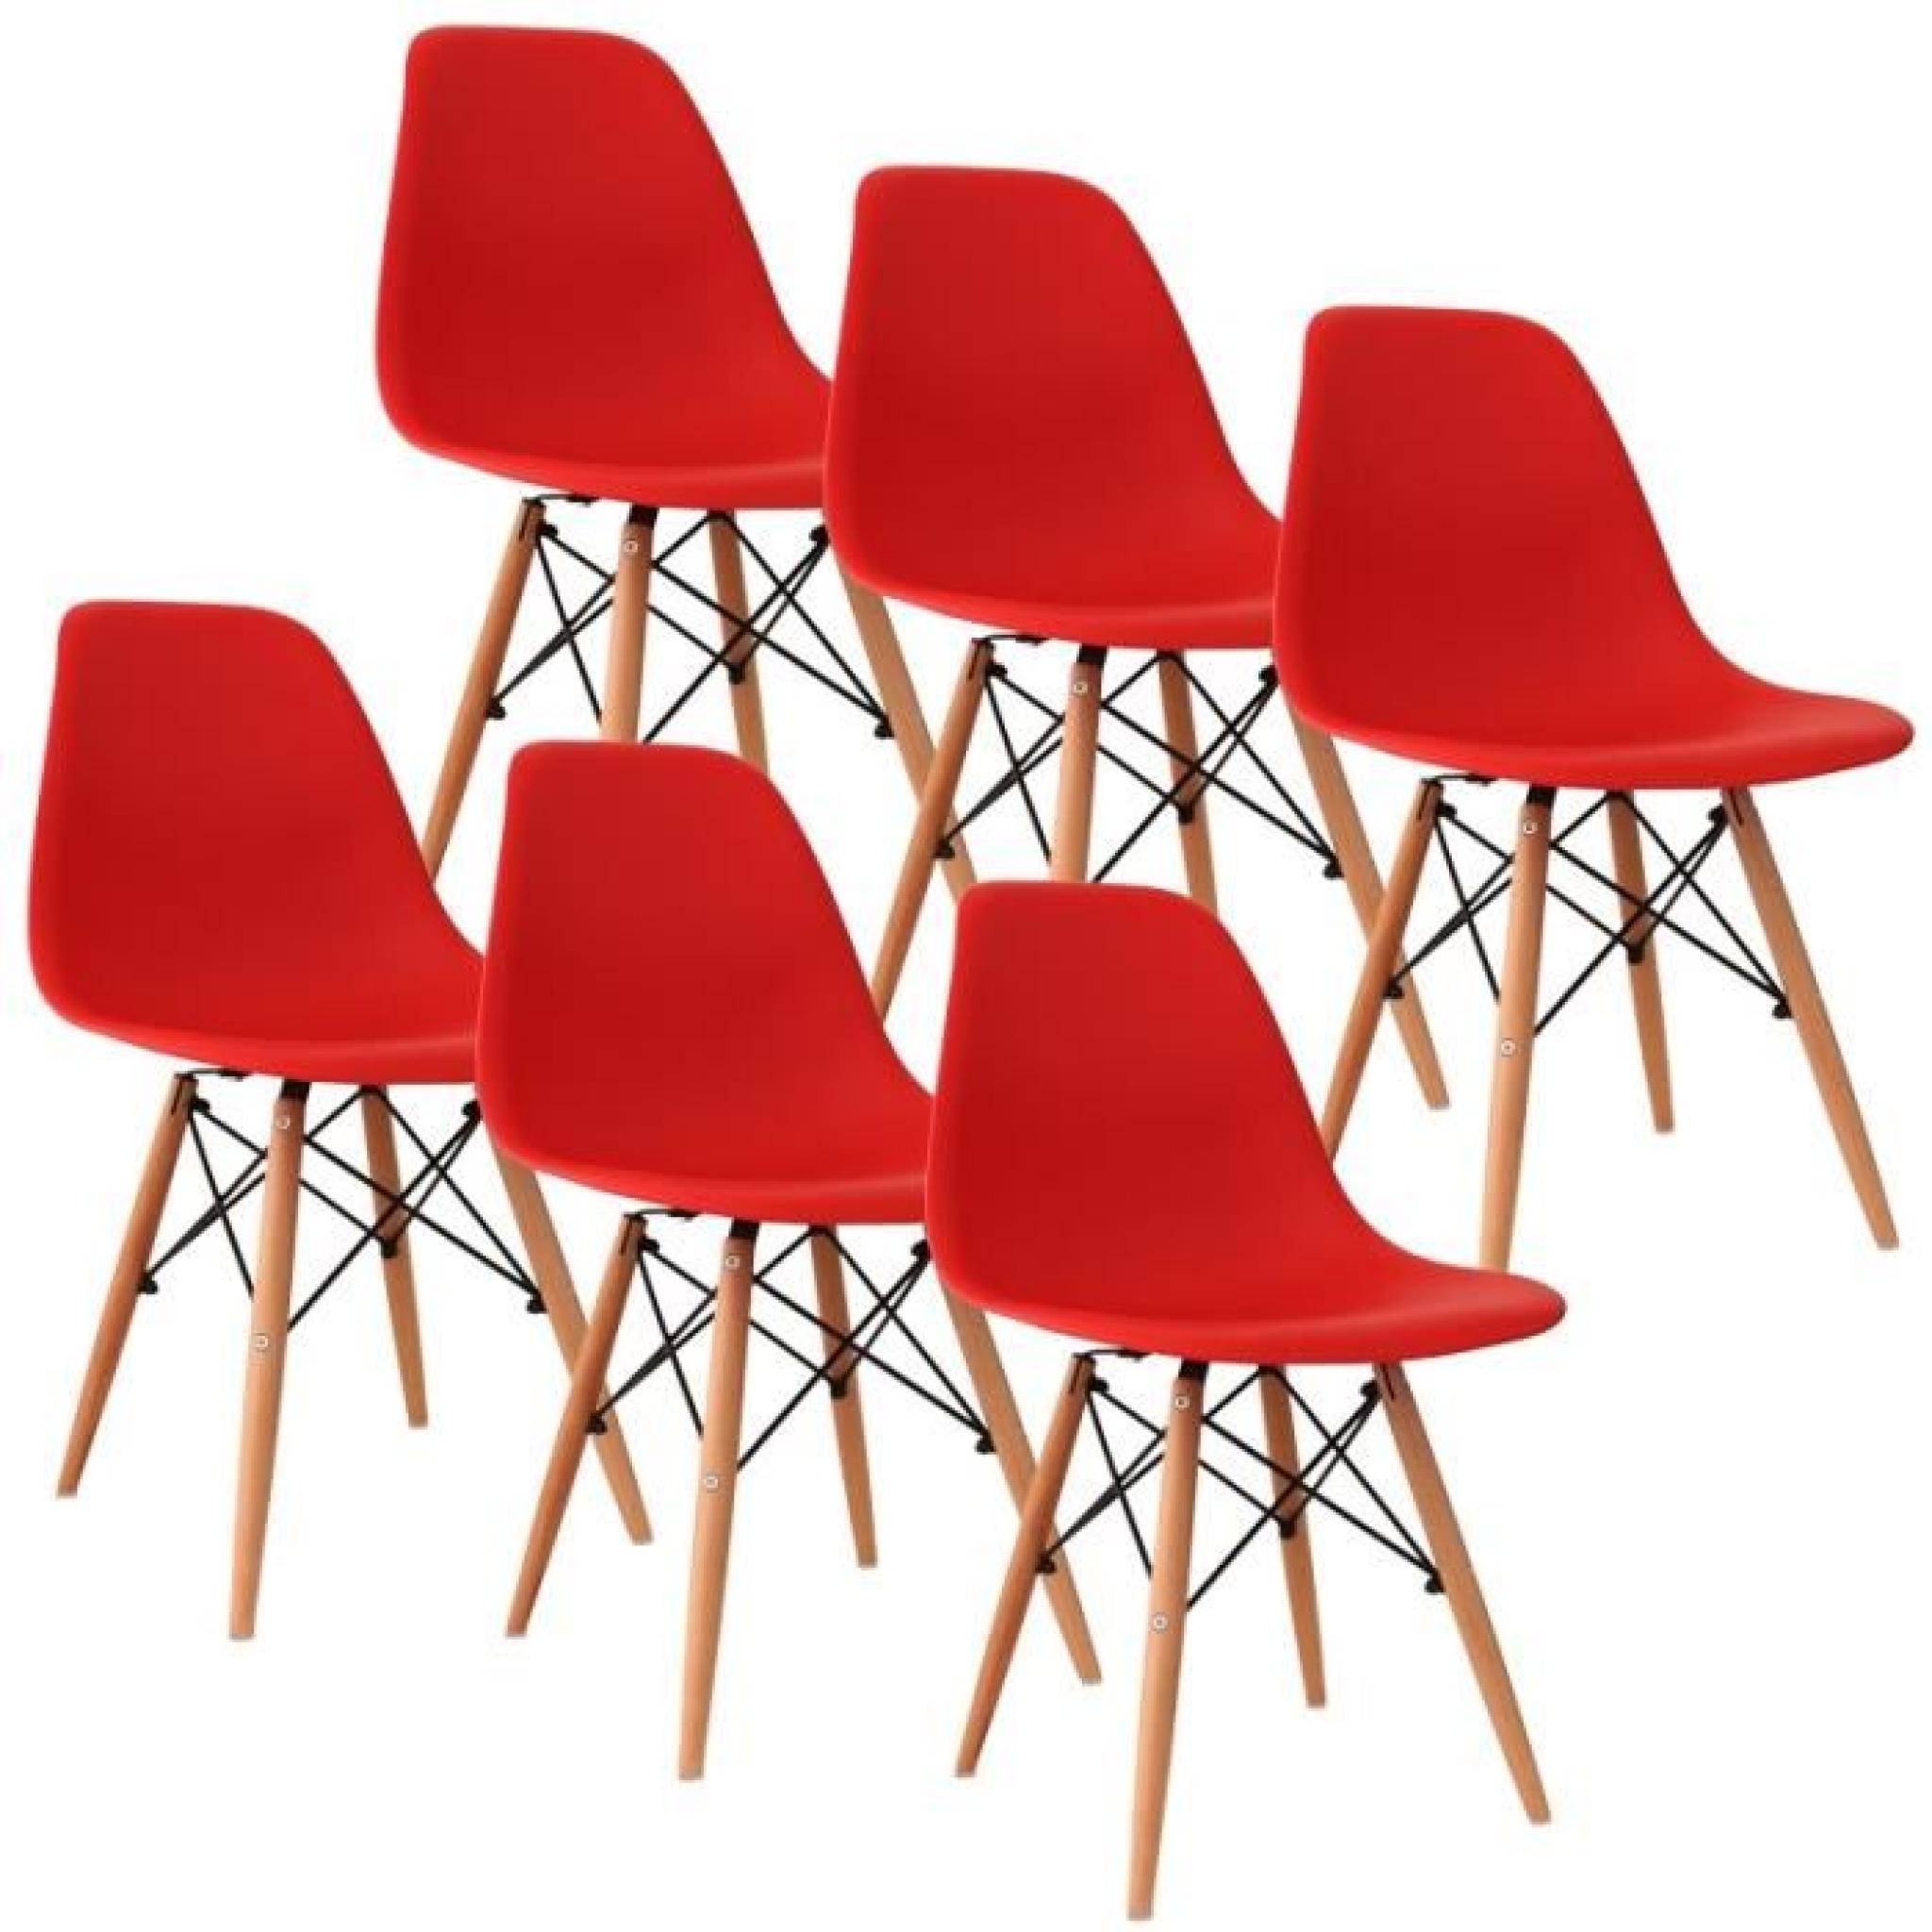 Chaise design rouge pieds en bois RETRO lot de 6